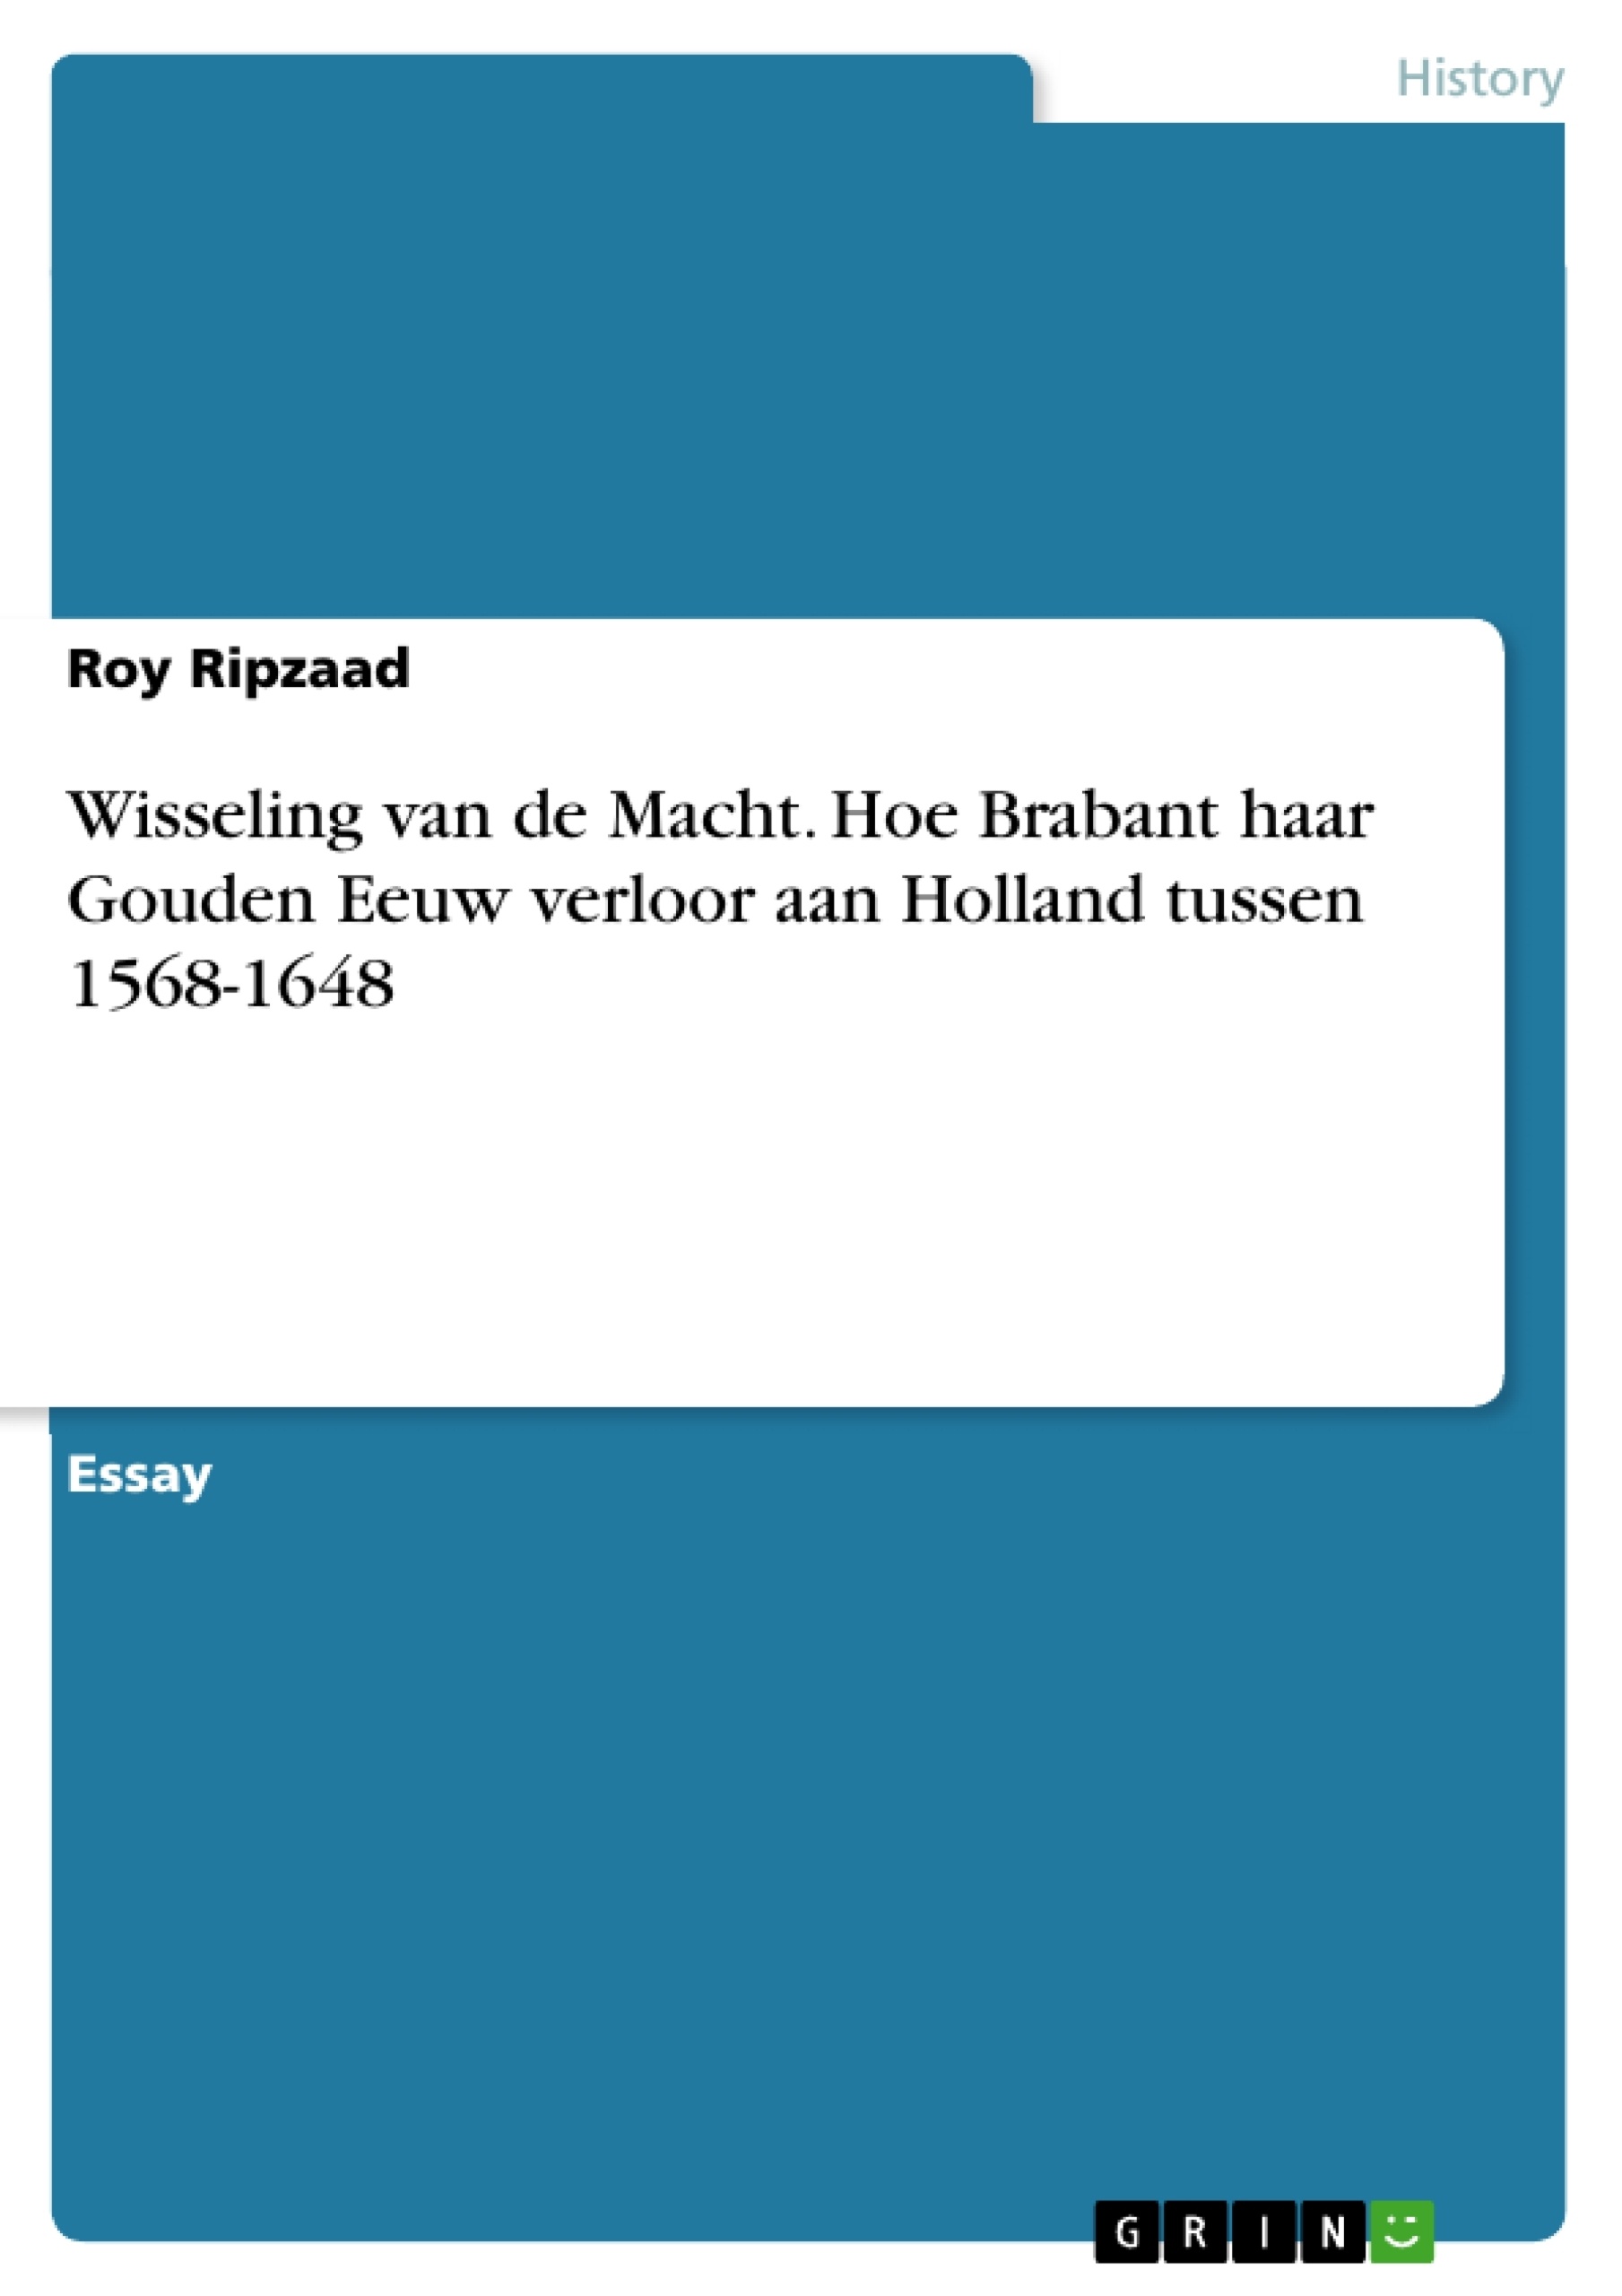 Título: Wisseling van de Macht. Hoe Brabant haar Gouden Eeuw verloor aan Holland tussen 1568-1648